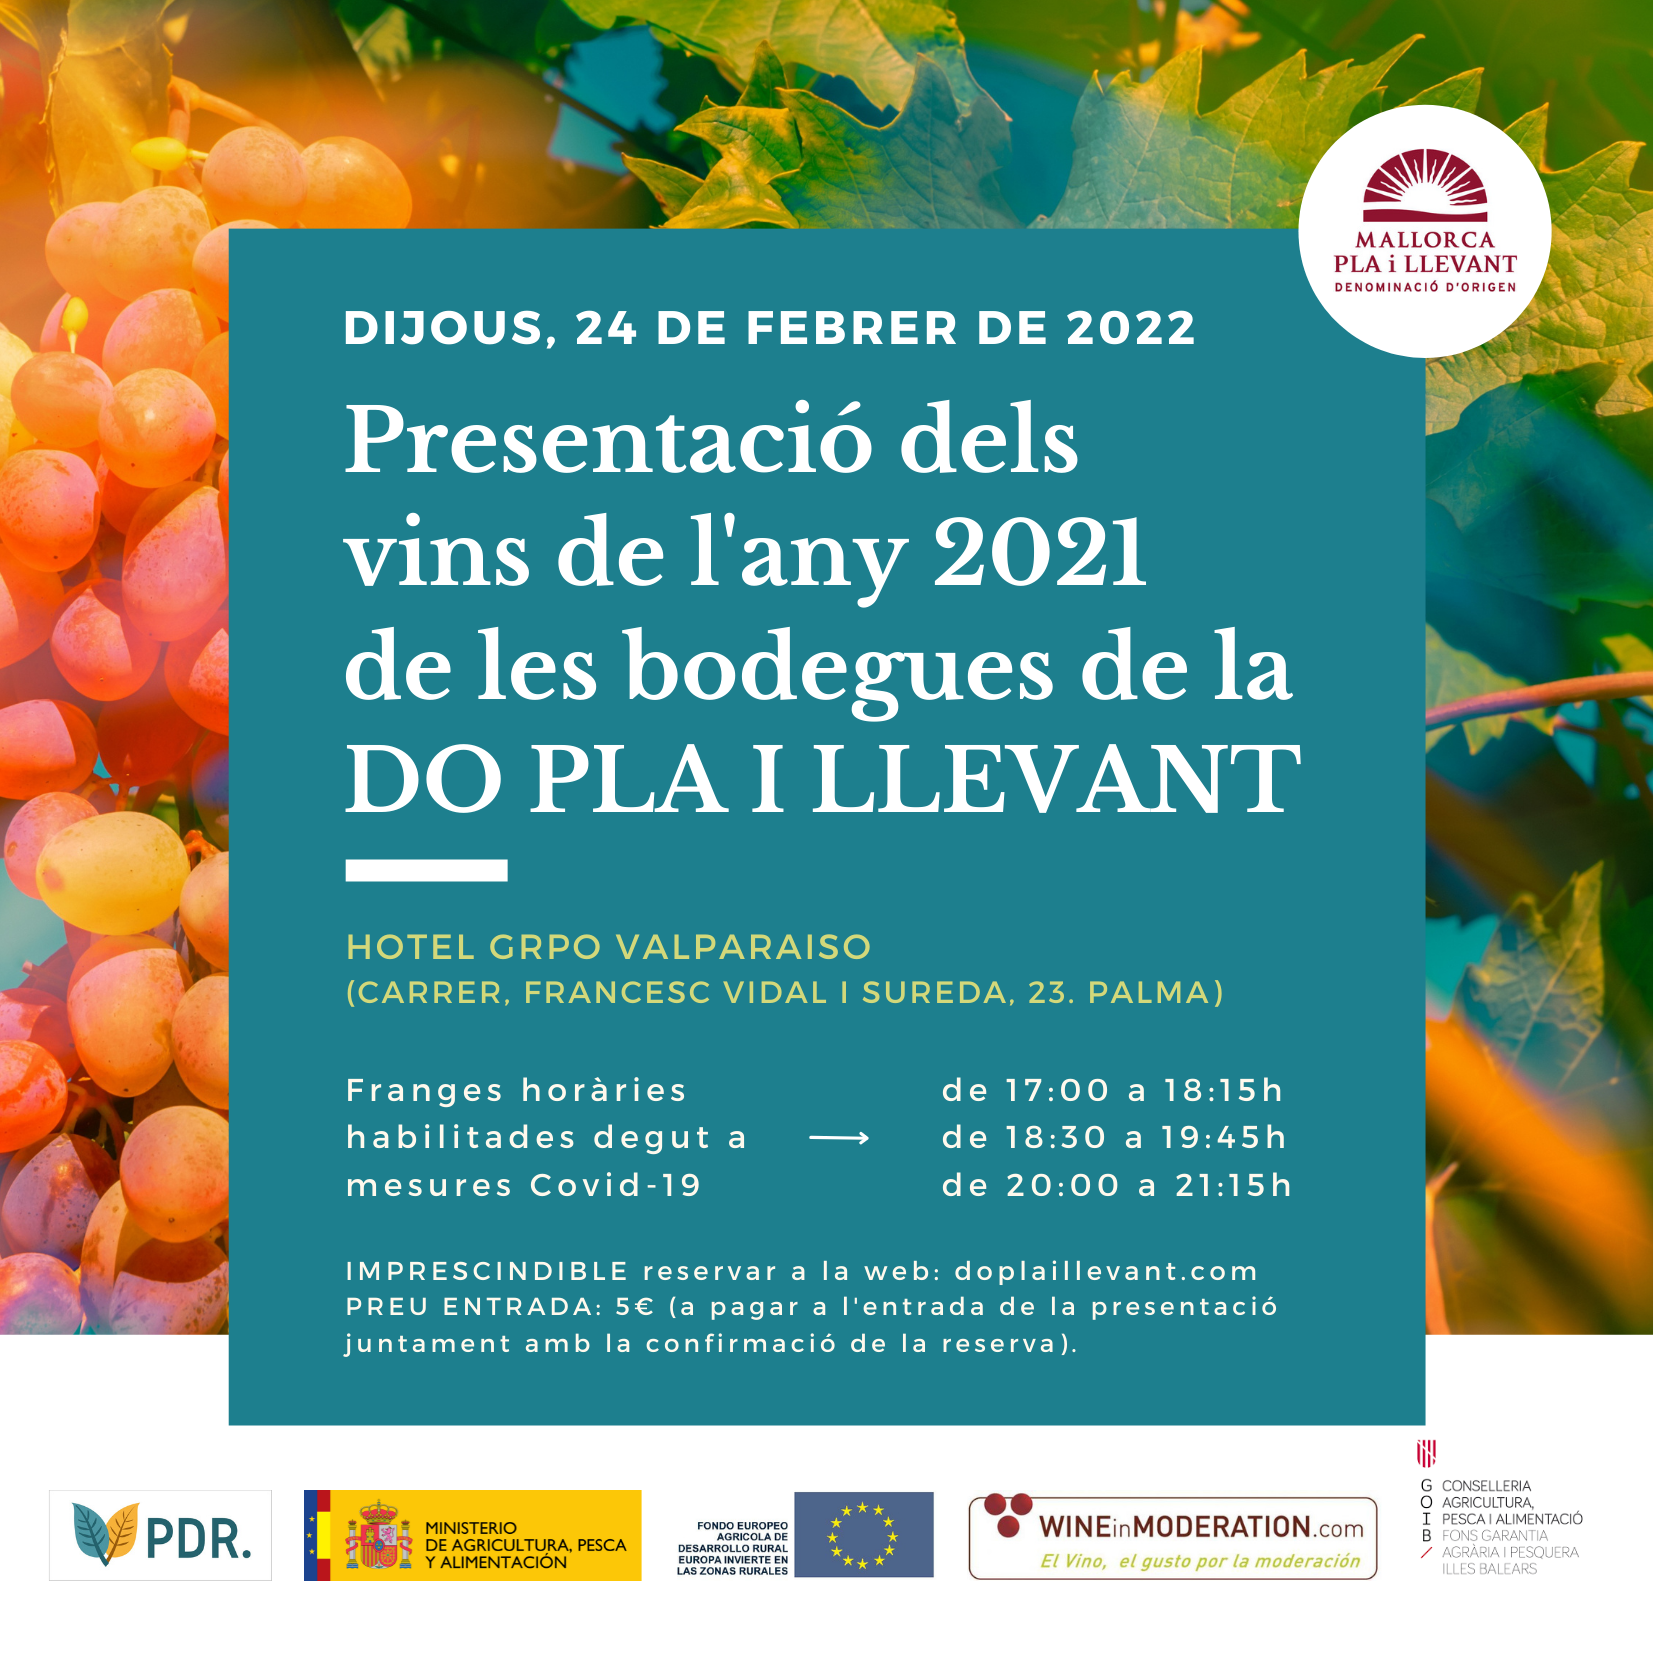 Presentació de les novetats dels vins de la DOP Pla i Llevant  - Notícies - Illes Balears - Productes agroalimentaris, denominacions d'origen i gastronomia balear